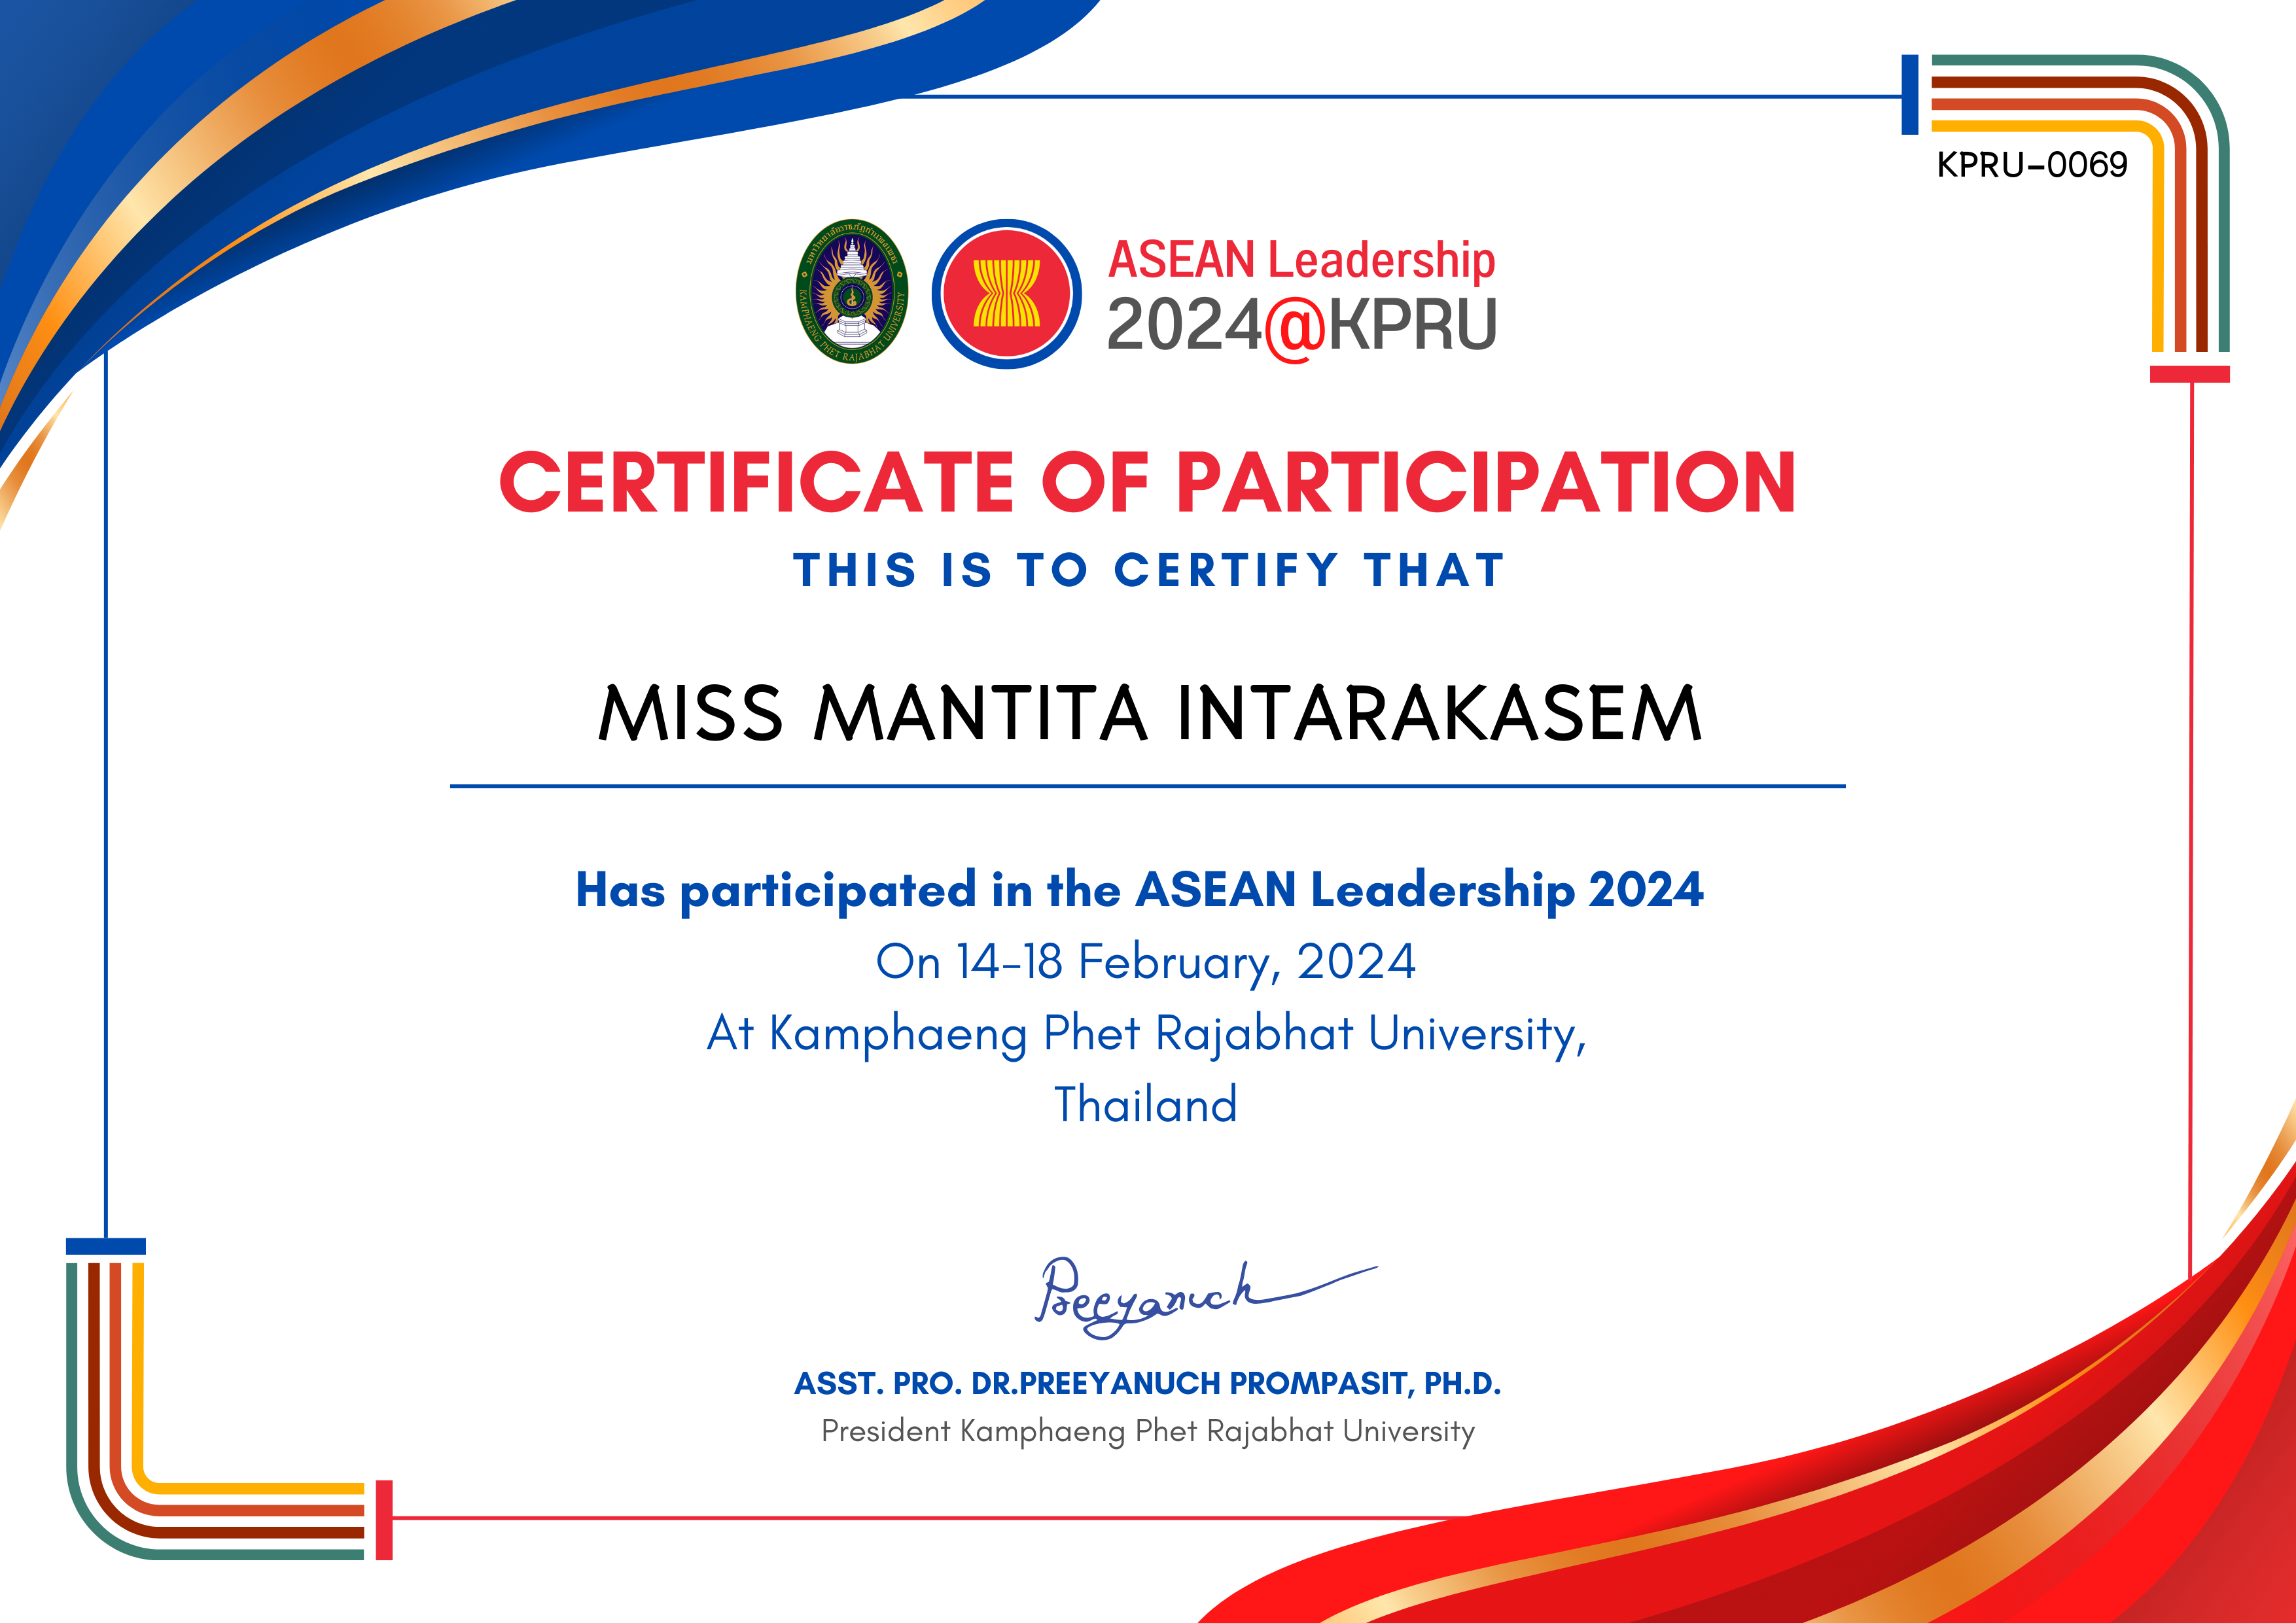 เกียรติบัตร ASEAN Leadership 2024-participated ของ MISS MANTITA INTARAKASEM